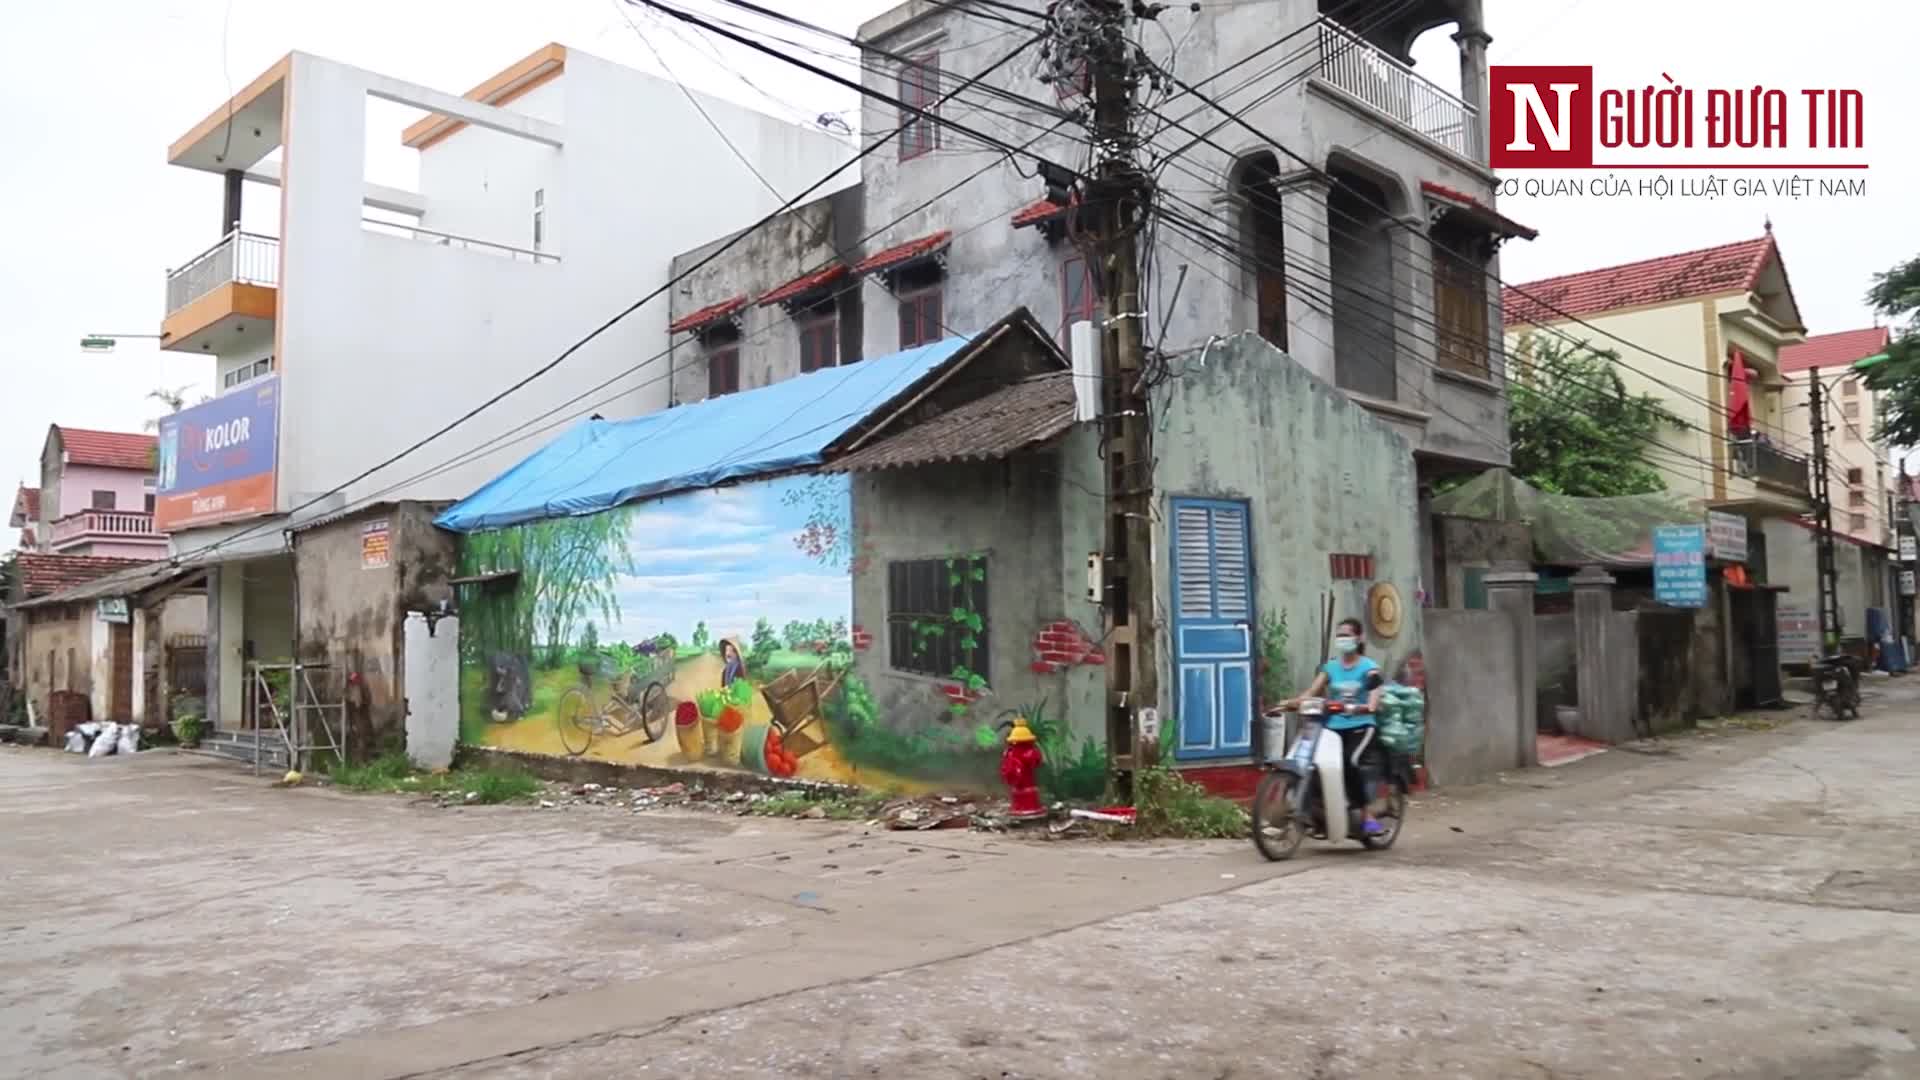 Cận cảnh làng bích họa bình yên ở ngoại thành Hà Nội